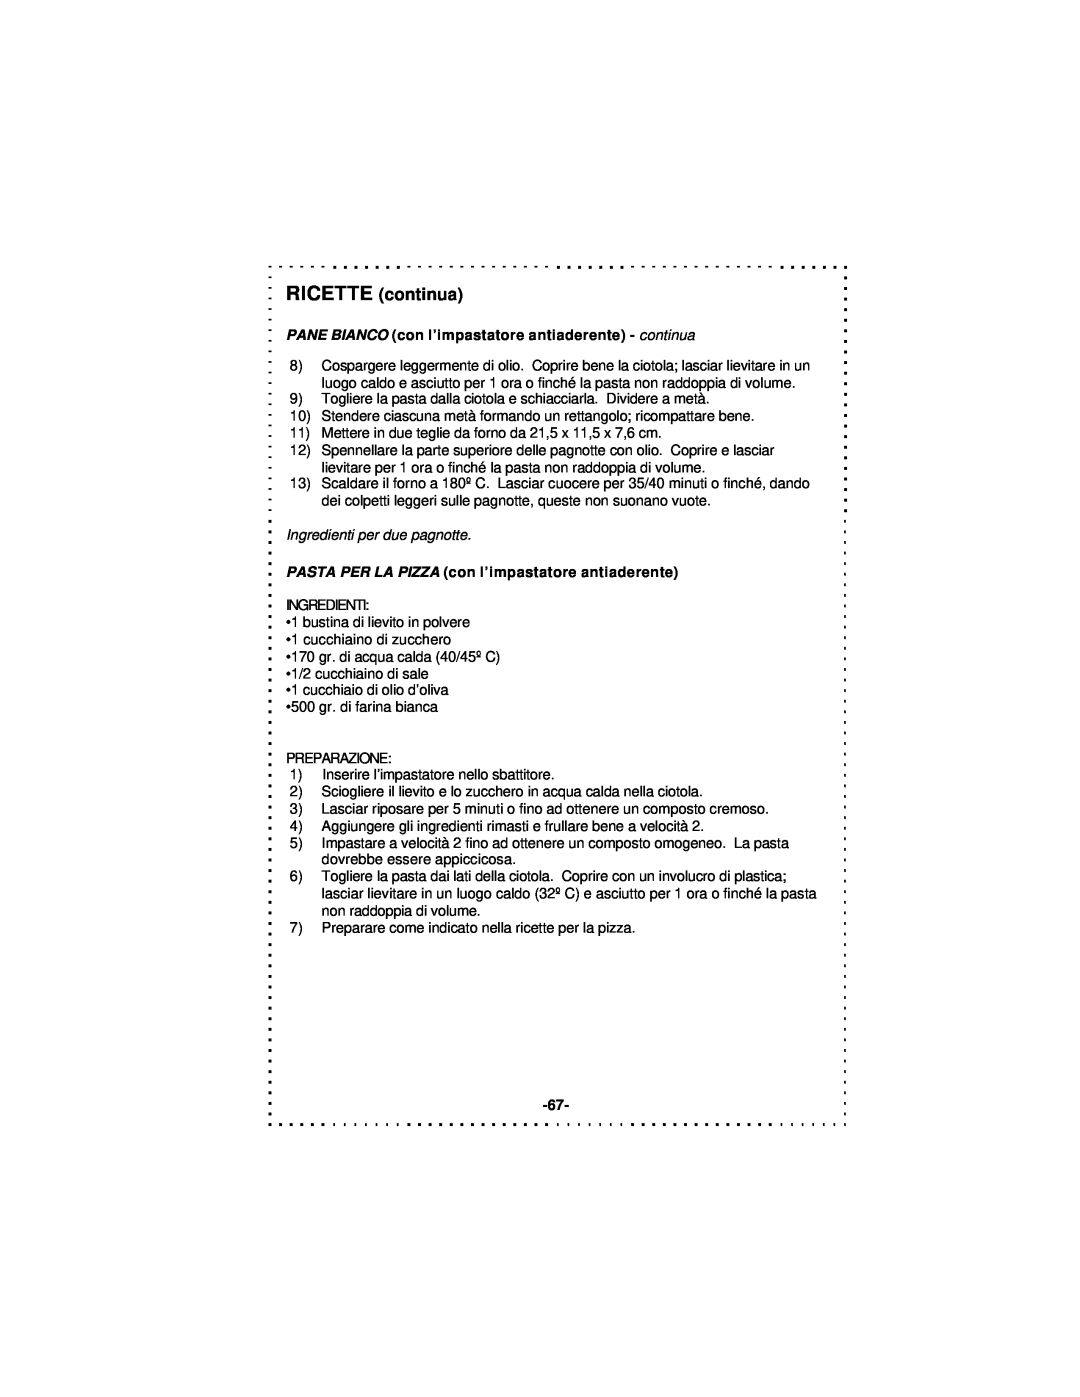 DeLonghi DSM5 - 7 Series instruction manual Ingredienti per due pagnotte, PASTA PER LA PIZZA con l’impastatore antiaderente 